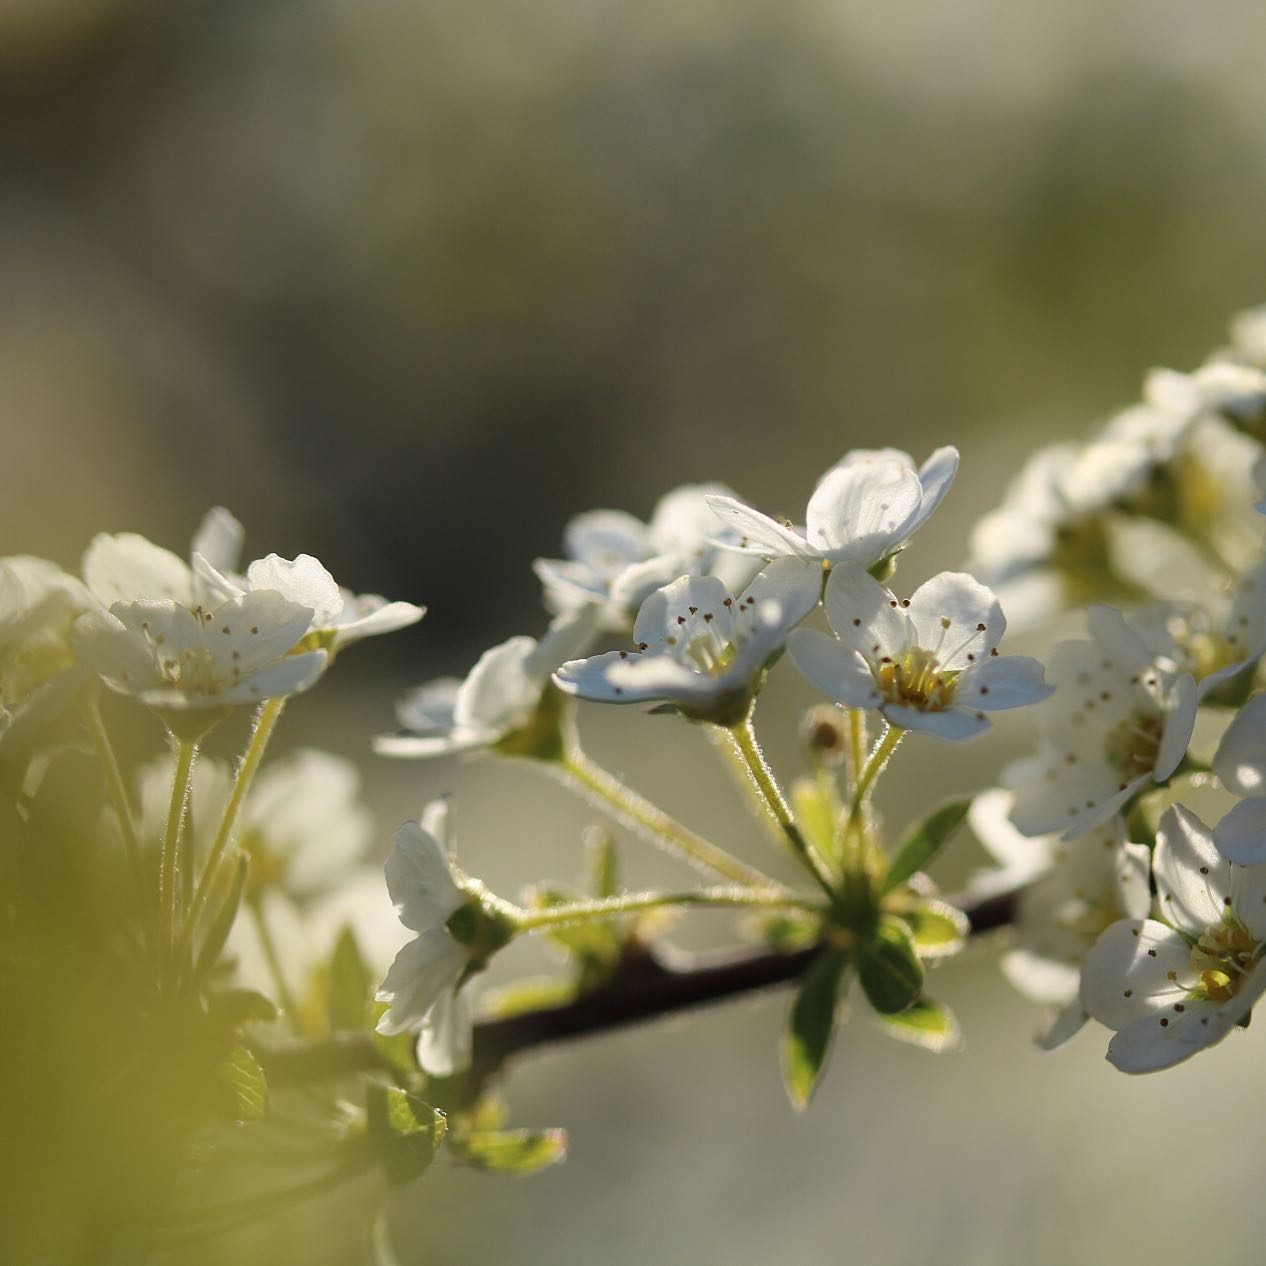 Snedriverbusk – Spiraea Cinerea, "Grefsheim" er en virkelig flot busk med en helt overdådig blomstring, der fuldstændig dækker busken i smukke hvide blomster hvor hvert enkelt blomst er meget yndefuld og her på sløret baggrund